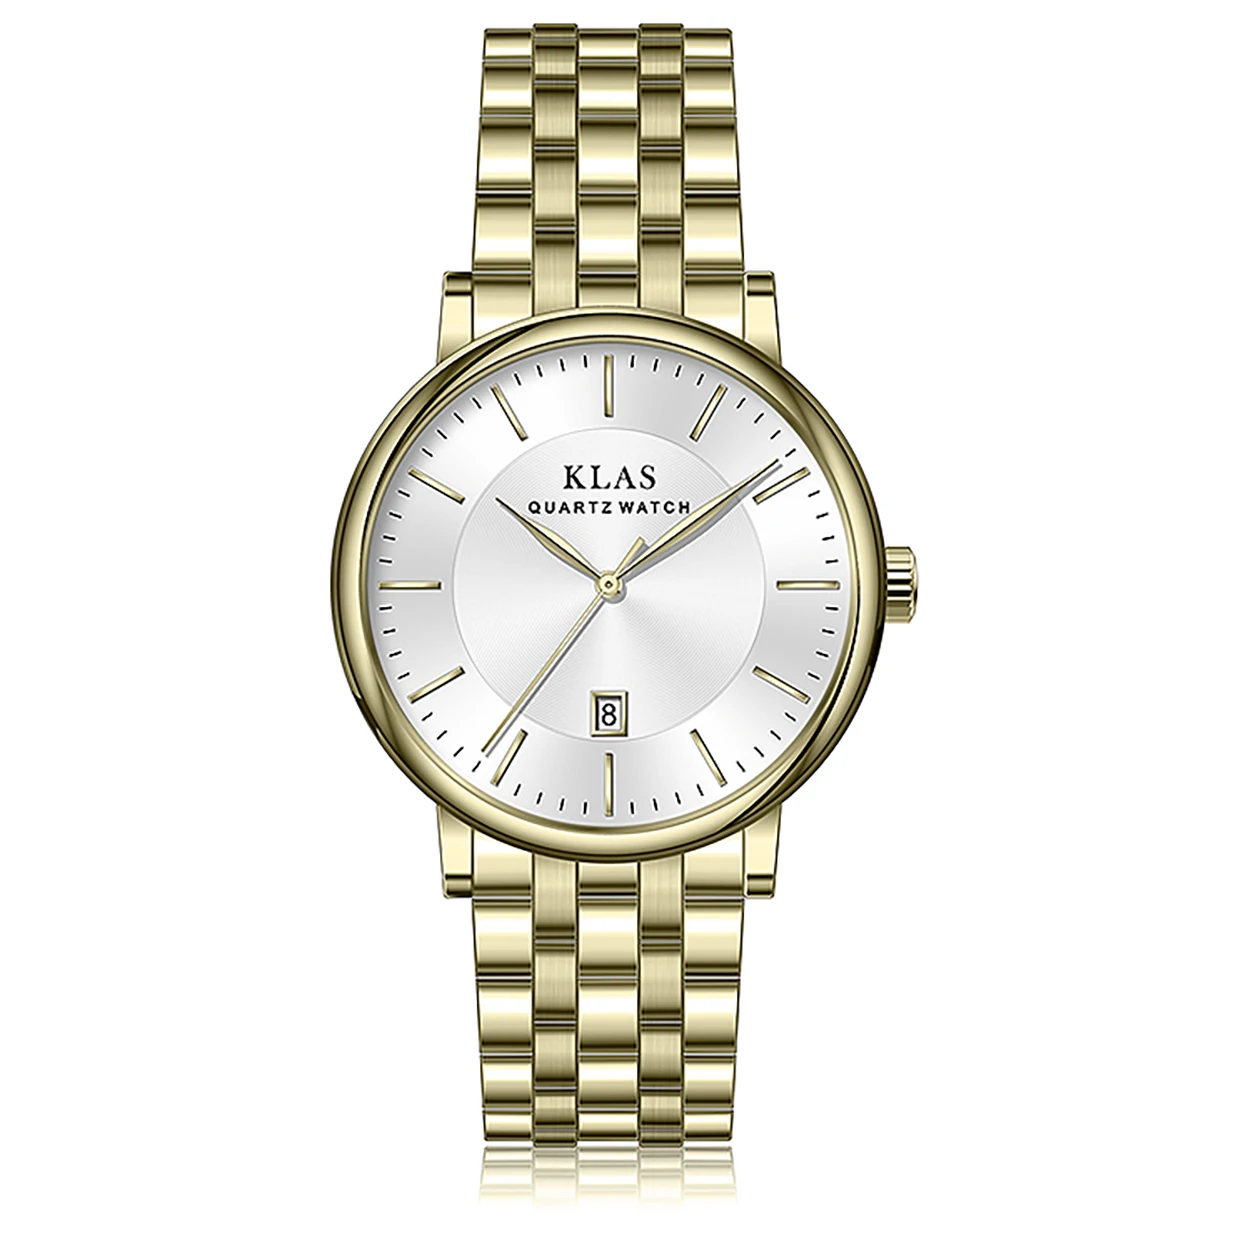 Top Brand Stainless Steel Quartz Male Watches для мужчин кварцевые наручные часы